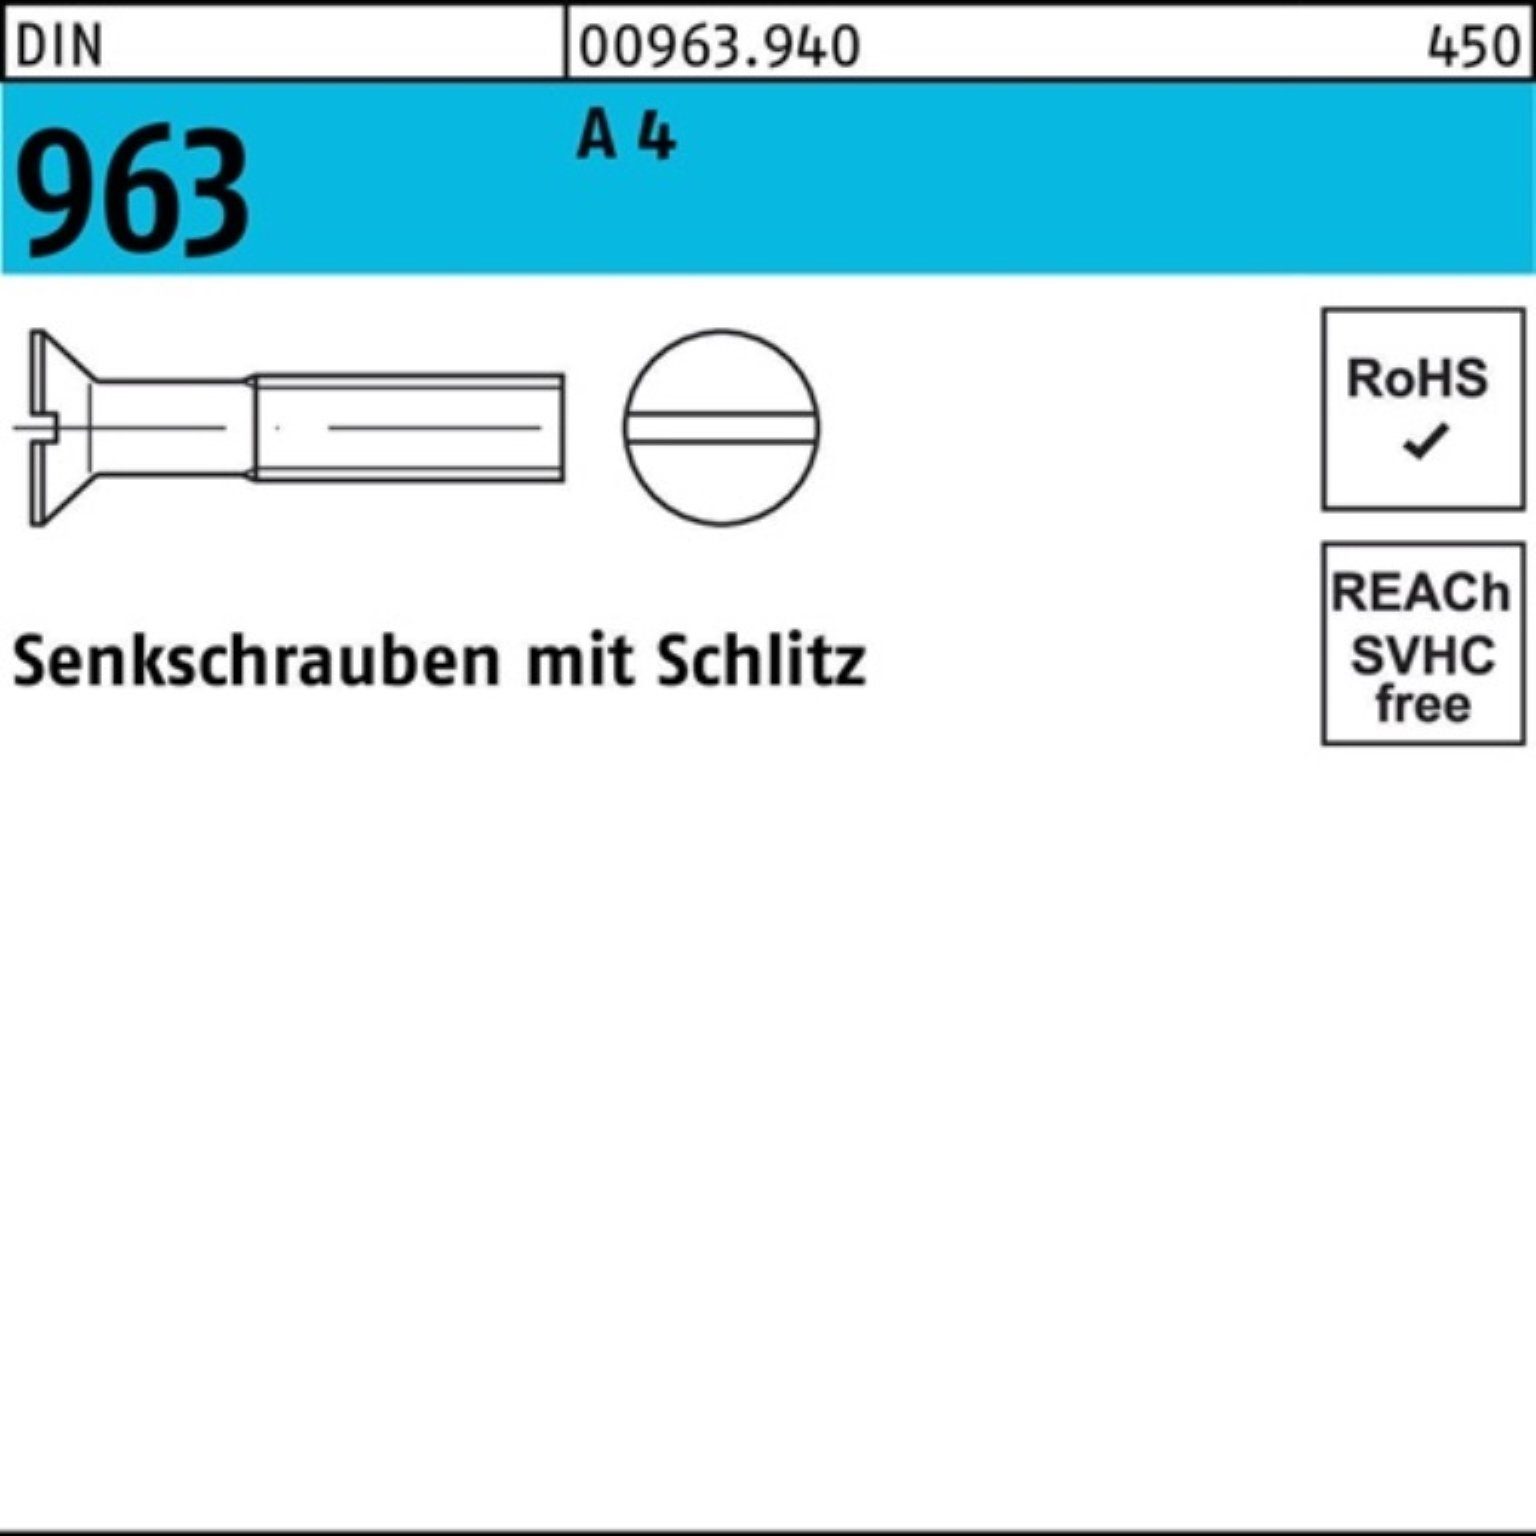 Reyher Pack Senkschraube 4 Schlitz 100er A M6x Senkschraube Stück DIN 100 963 DIN 12 963